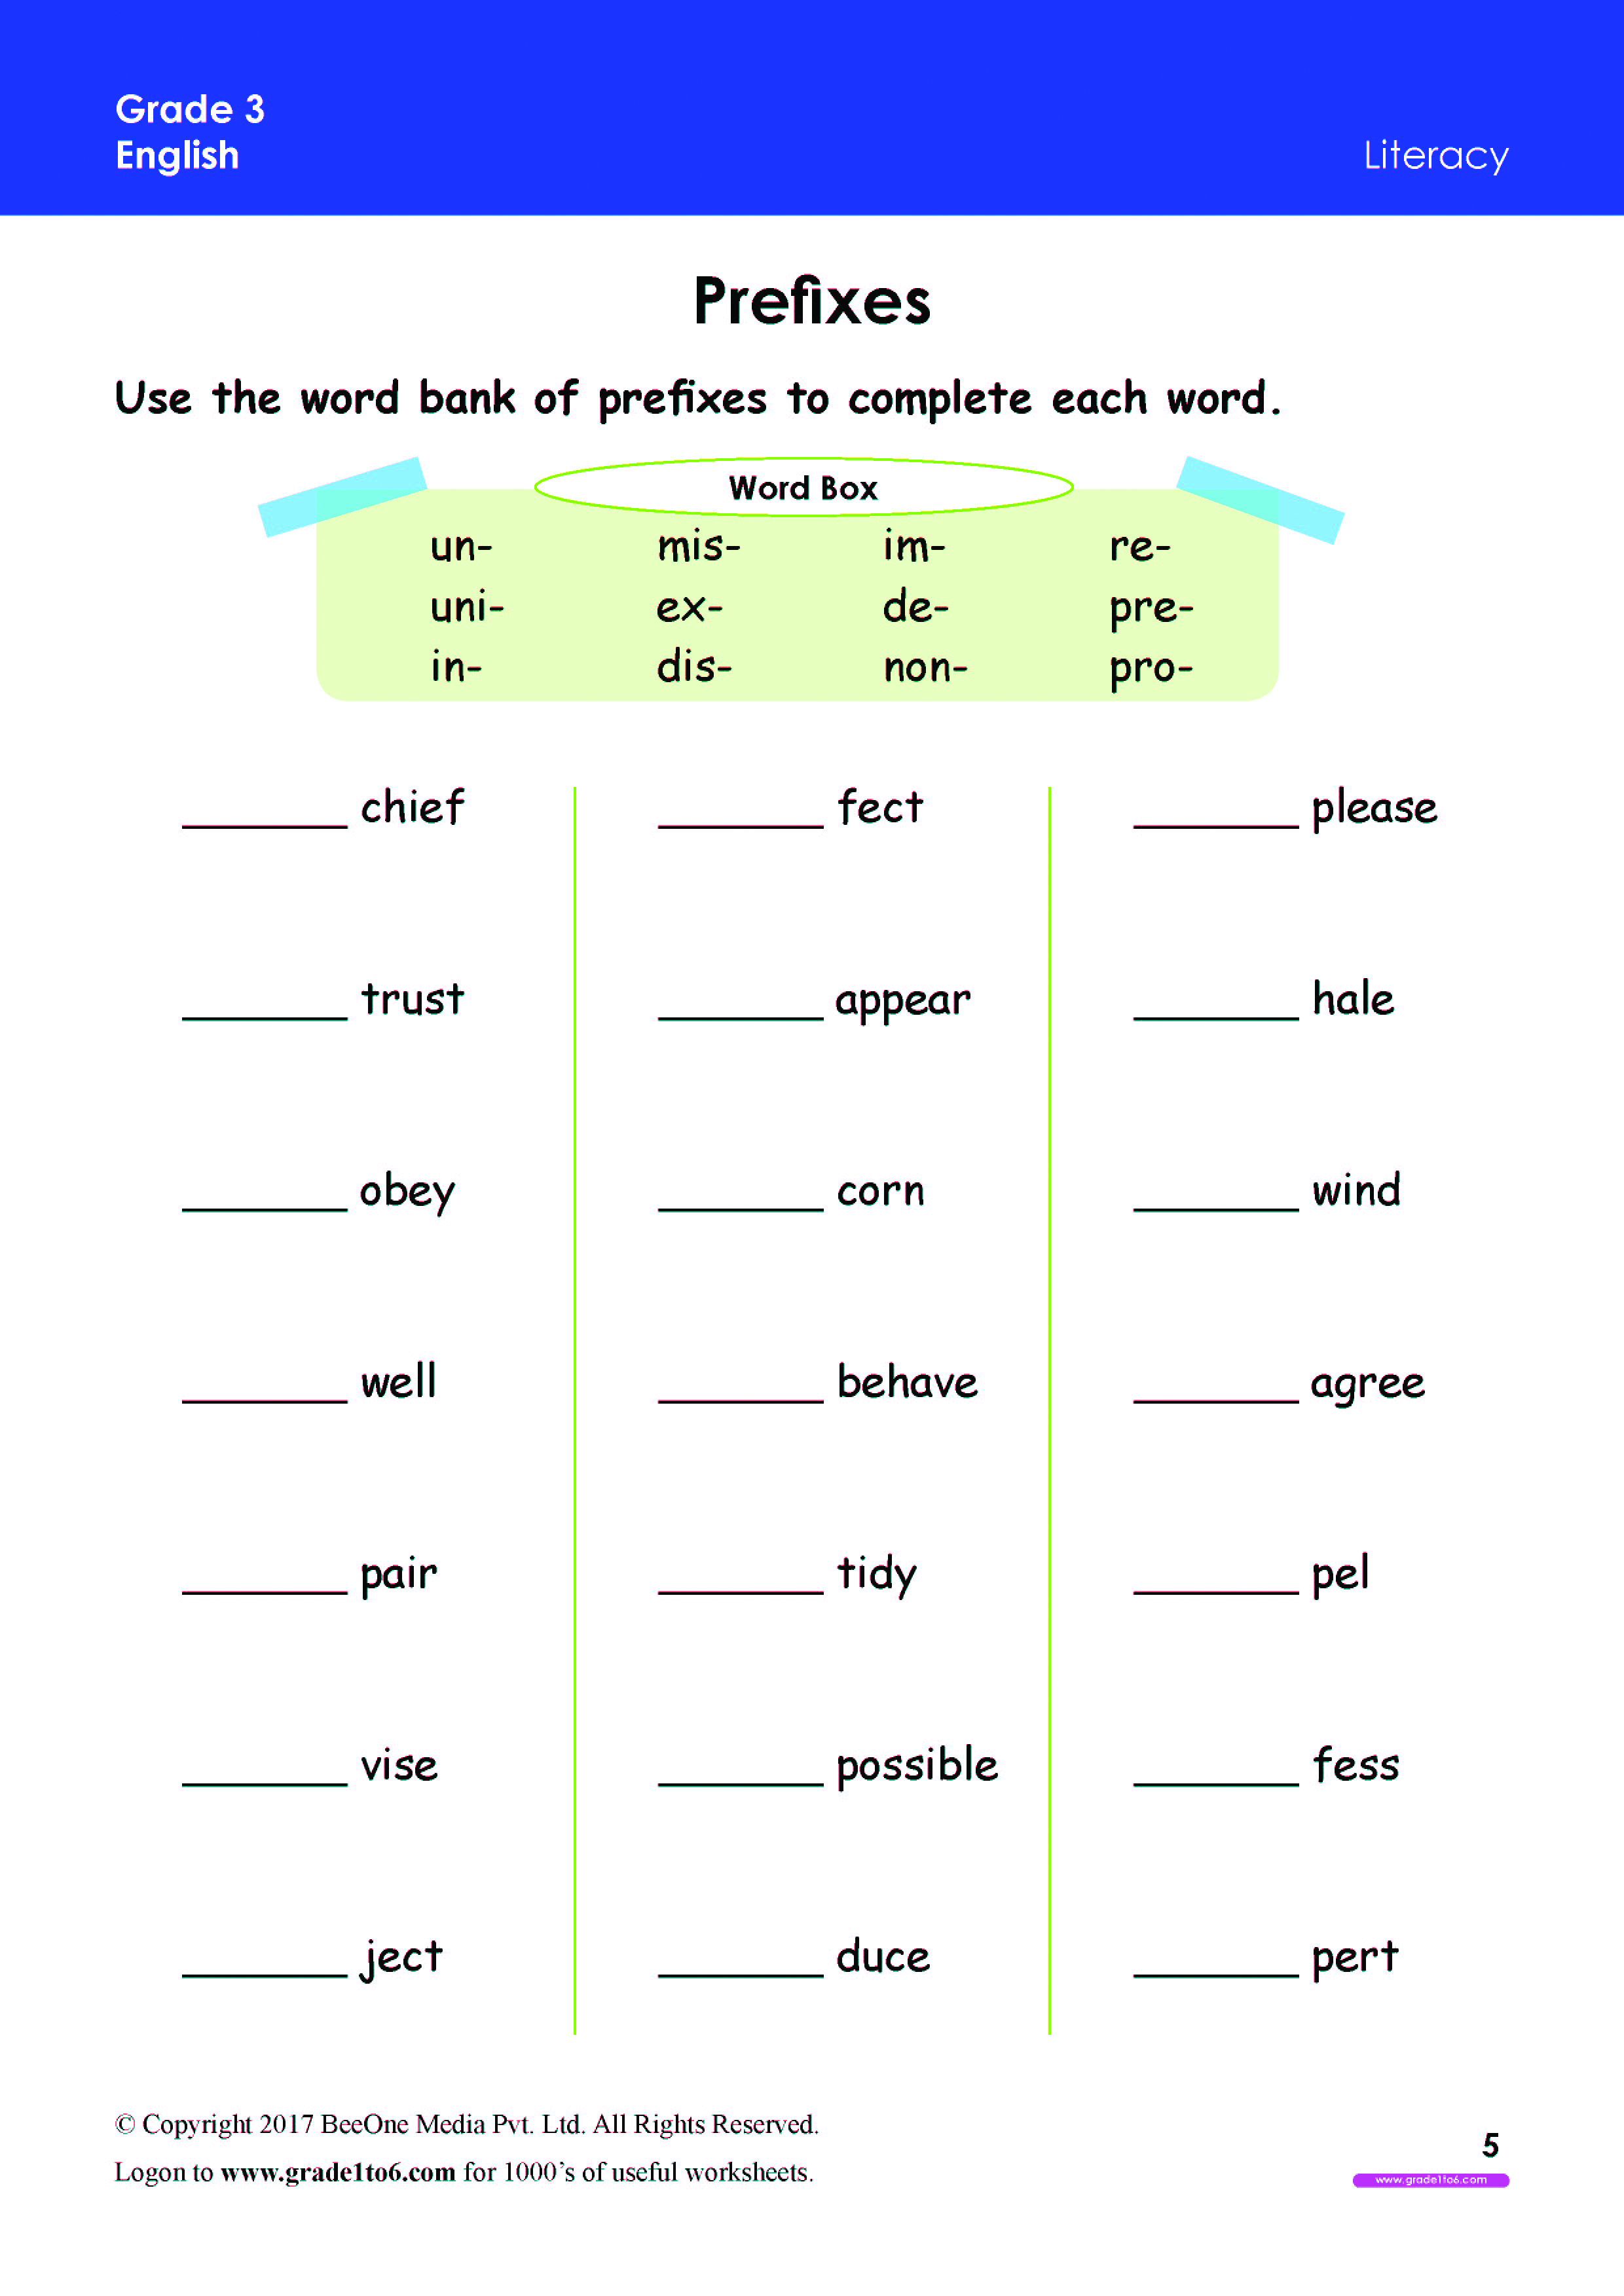 prefix worksheets grade 3 www grade1to6 com